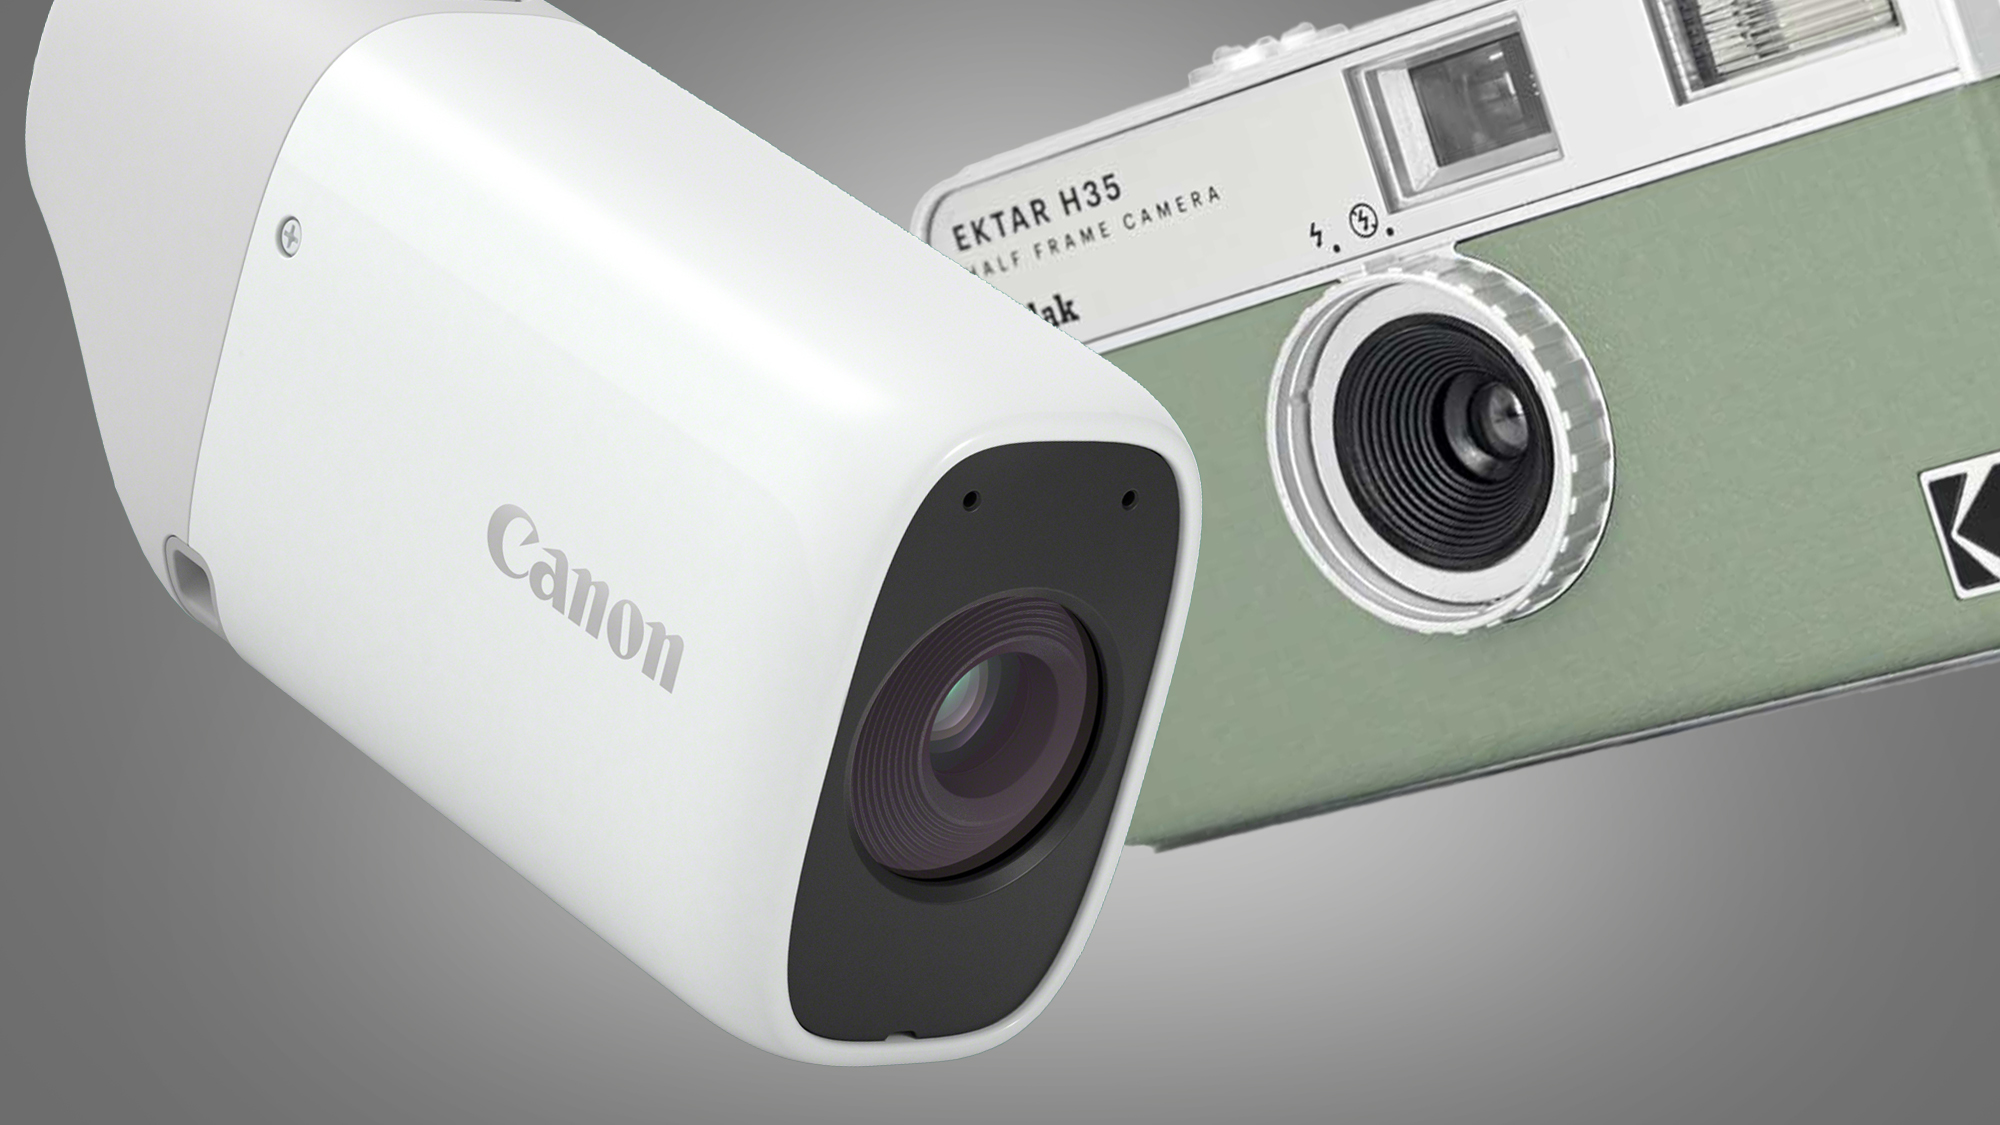 Canon PowerShot Zoom и компактные камеры Kodak Ektar H35 на сером фоне